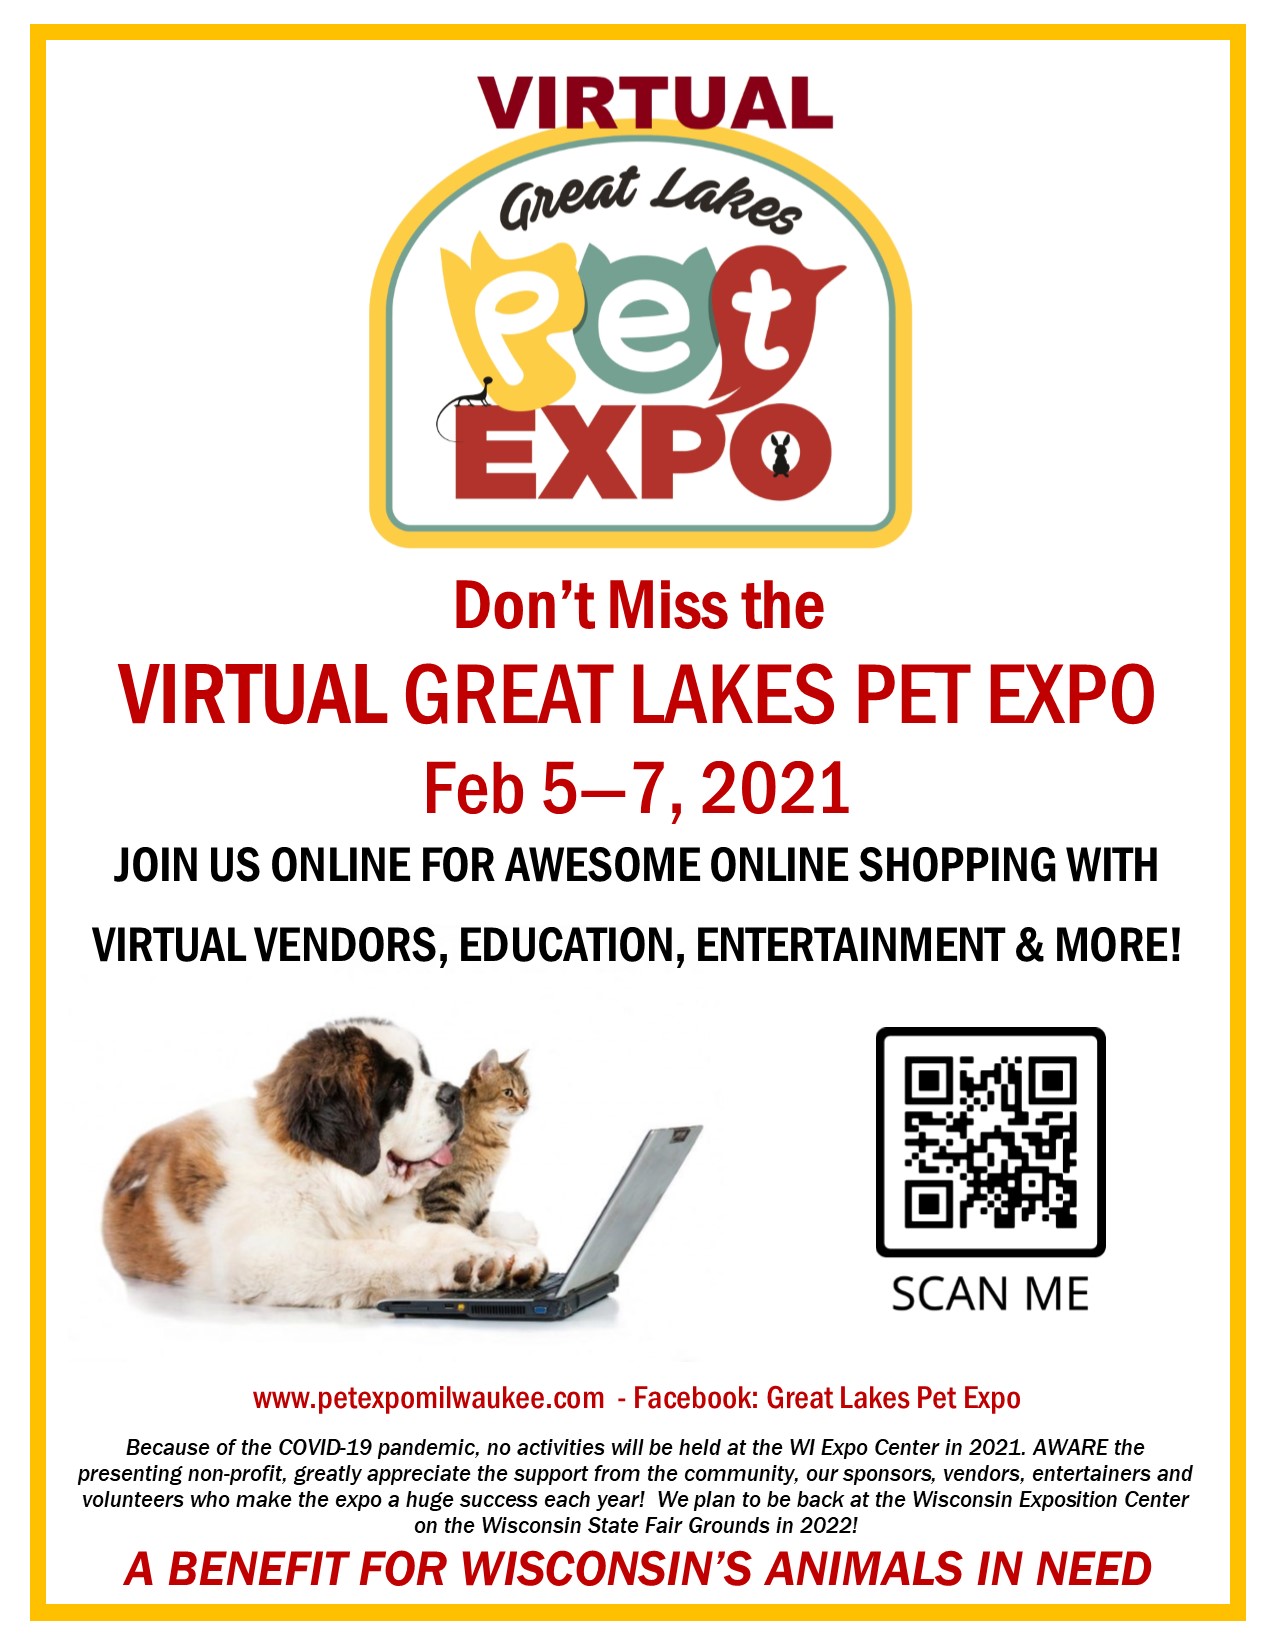 a 2021 Virtual Vendor Great Lakes Pet Expo